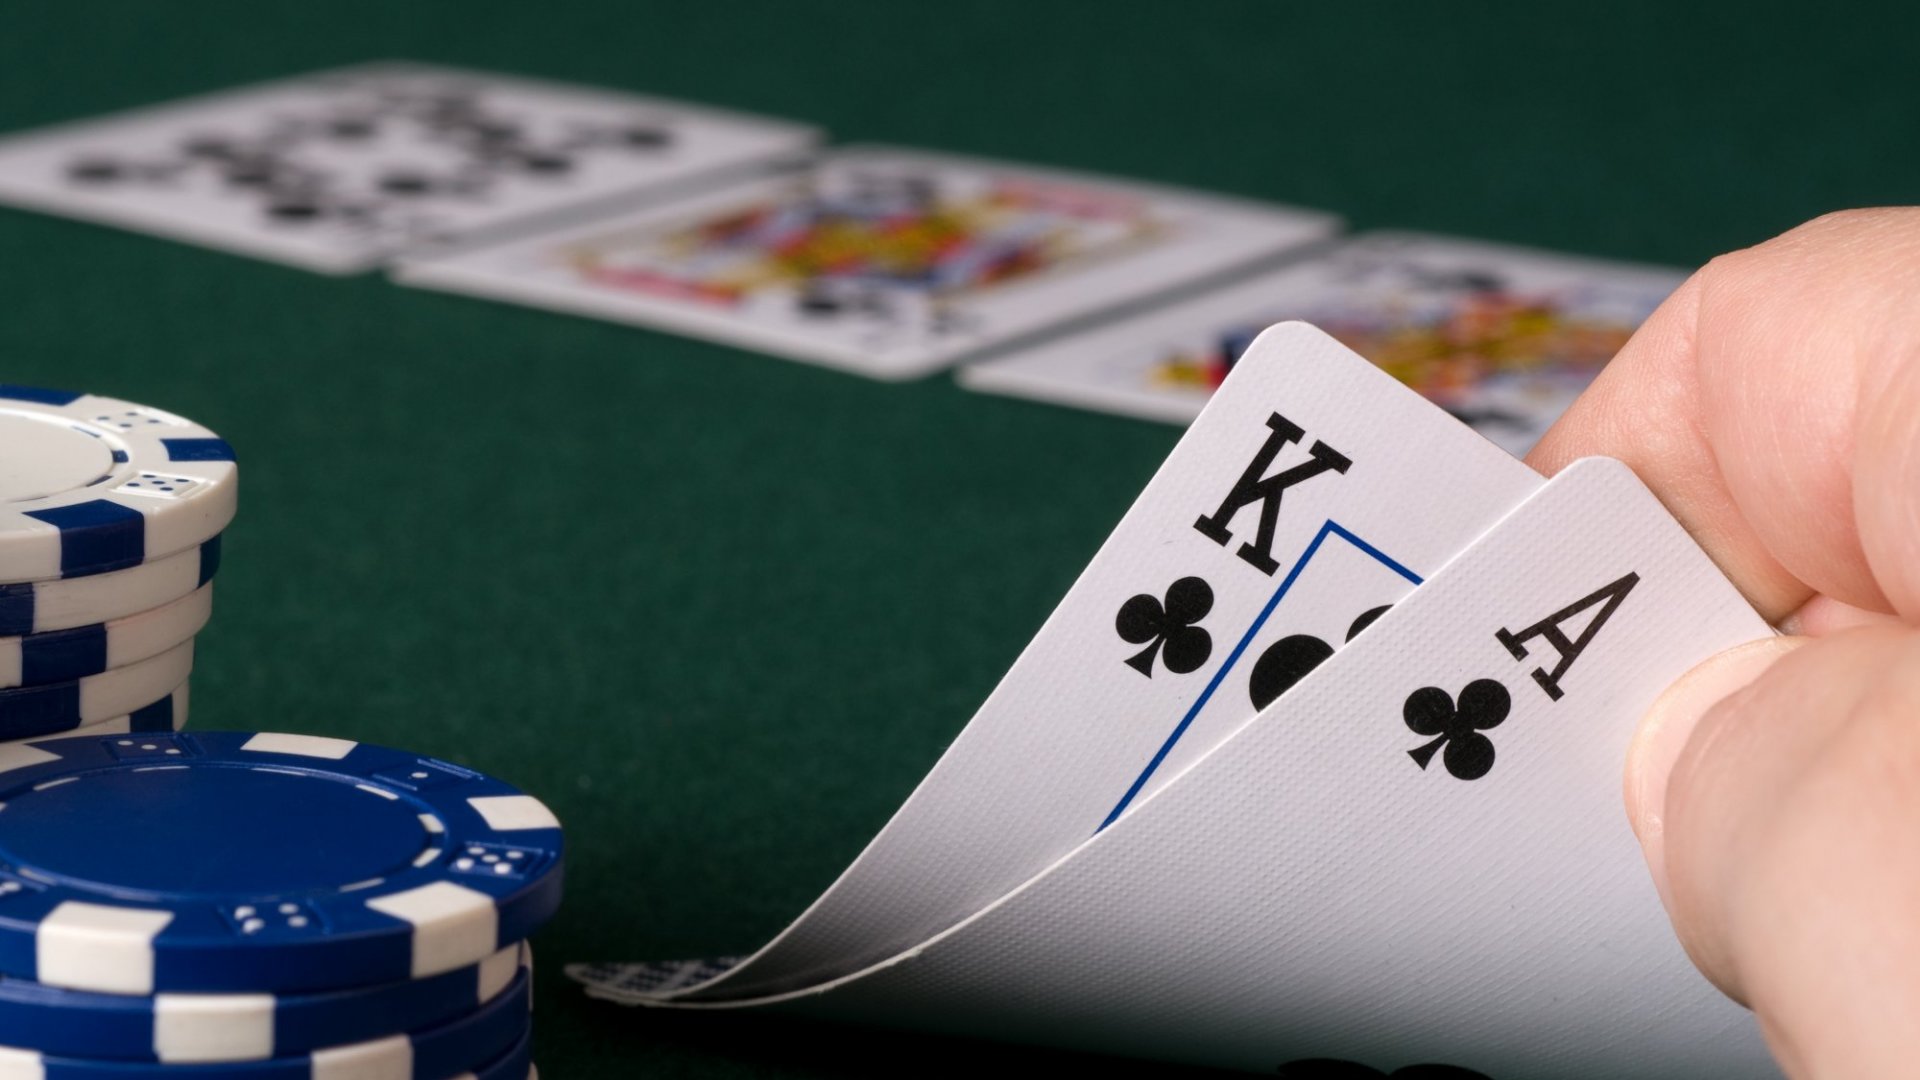 TVBet liefert eine neue Live-Poker-Option für den polnischen iGaming-Markt